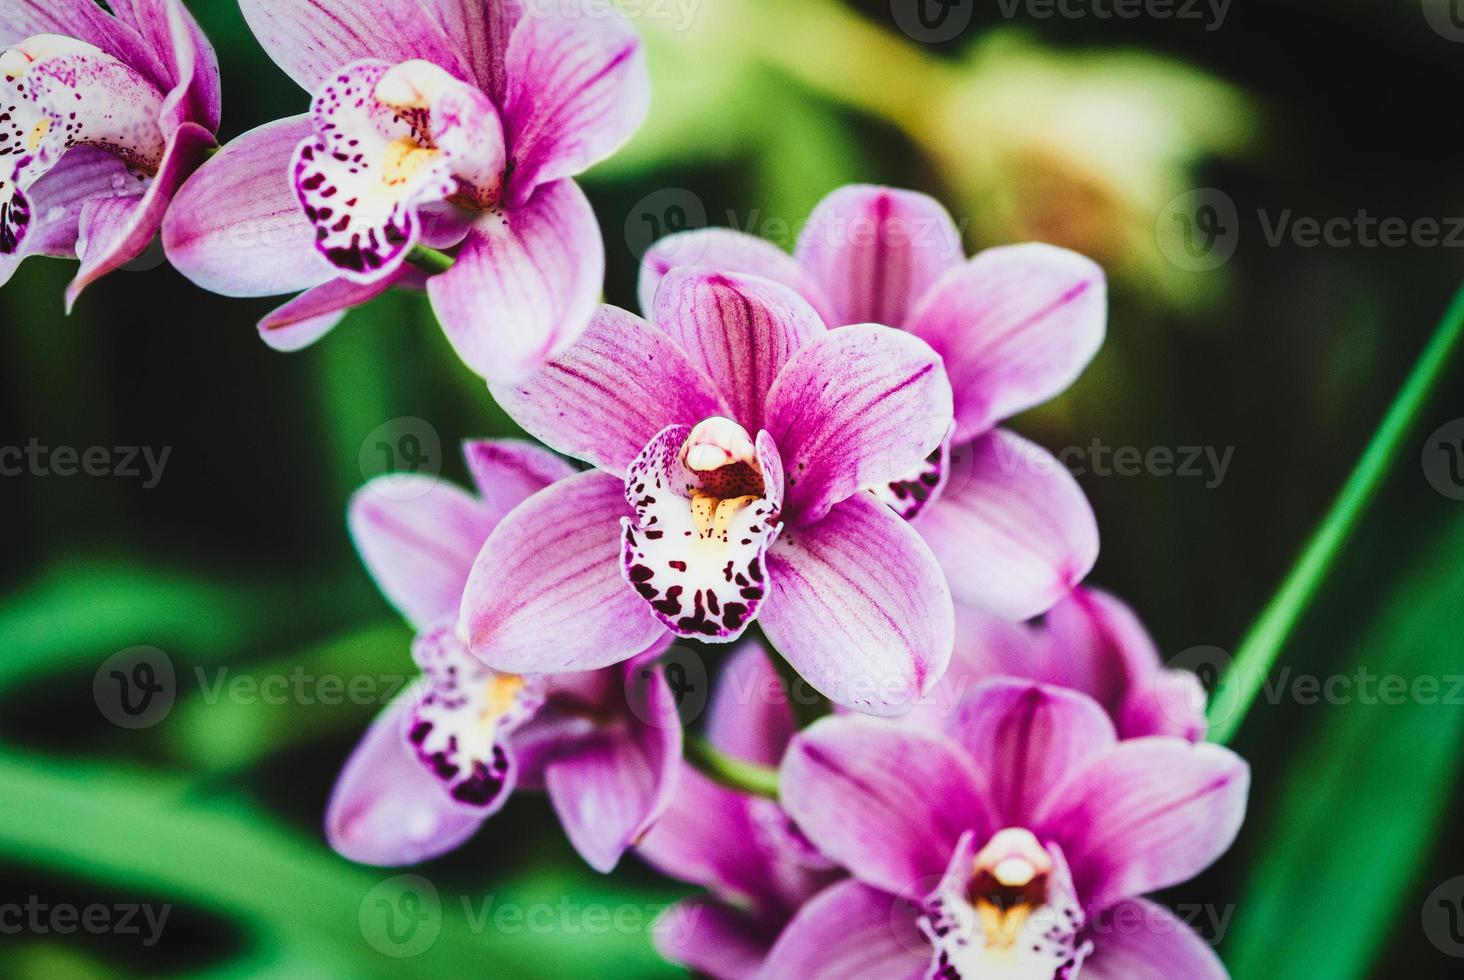 boot orchidee bloem piek met roze bloemen, detailopname foto